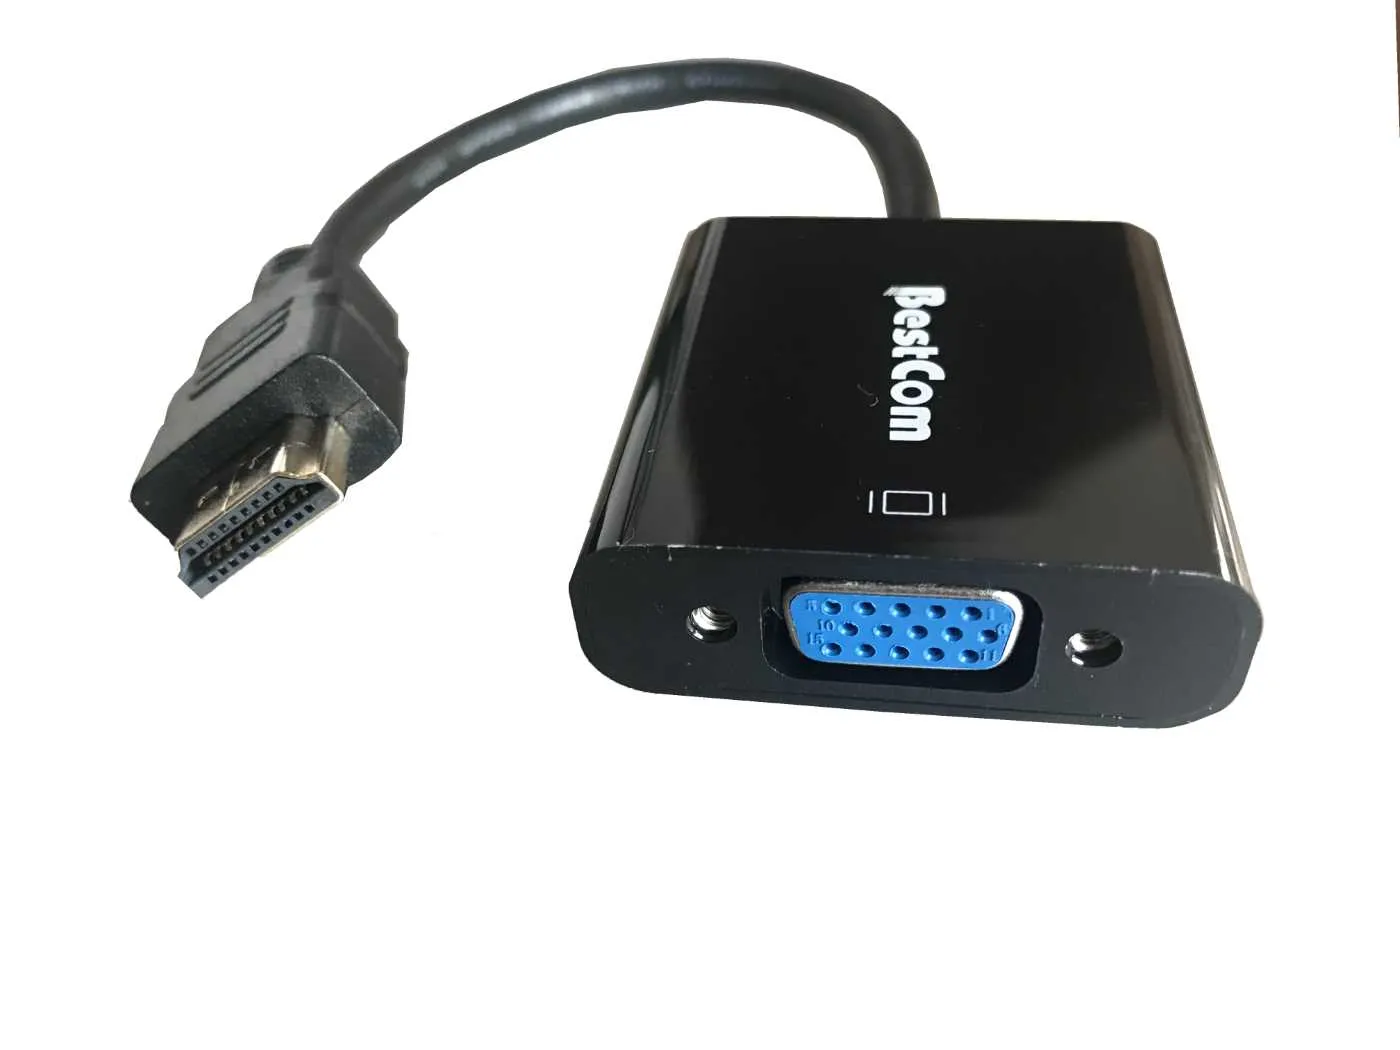 Adaptador HDMI estándar macho a VGA hembra con salida de audio 3,5 mm 1080p.